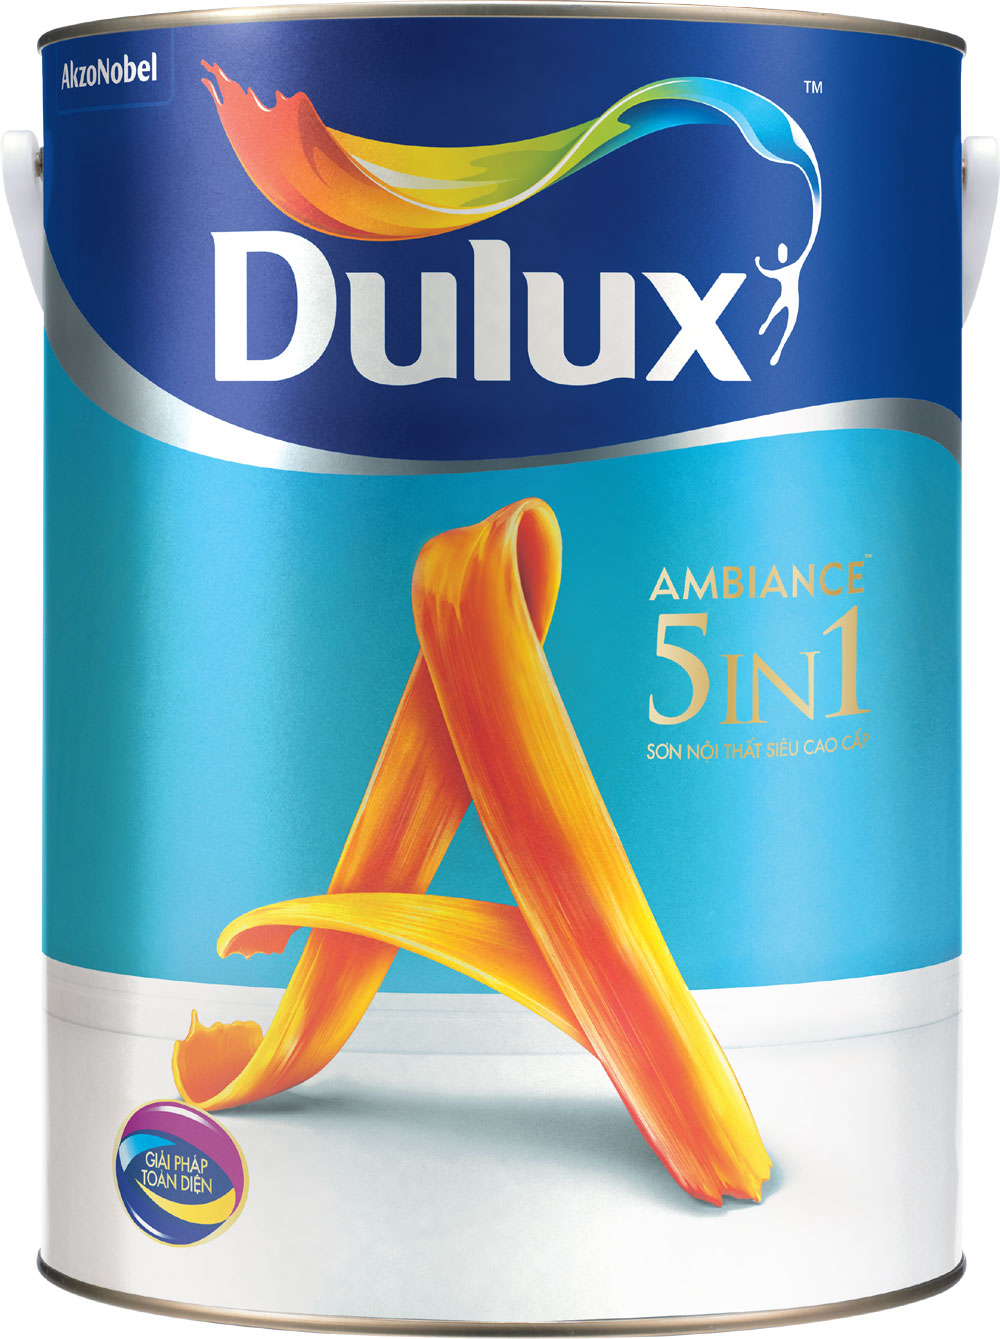 Dulux 5in1